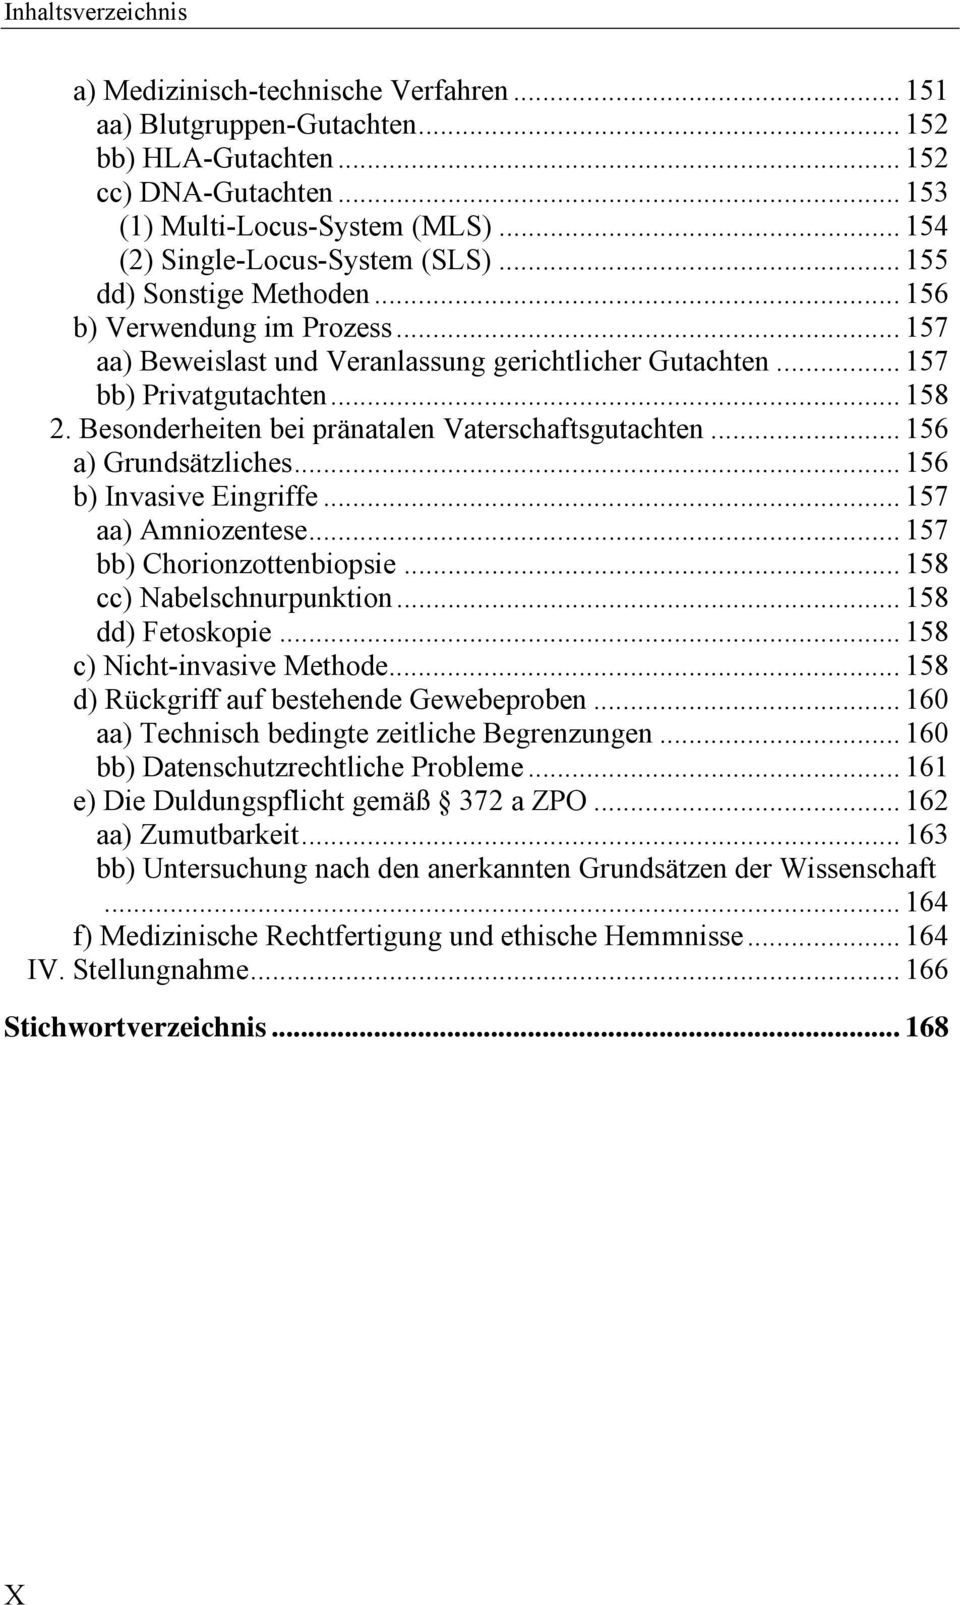 Besonderheiten bei pränatalen Vaterschaftsgutachten... 156 a) Grundsätzliches... 156 b) Invasive Eingriffe... 157 aa) Amniozentese... 157 bb) Chorionzottenbiopsie... 158 cc) Nabelschnurpunktion.